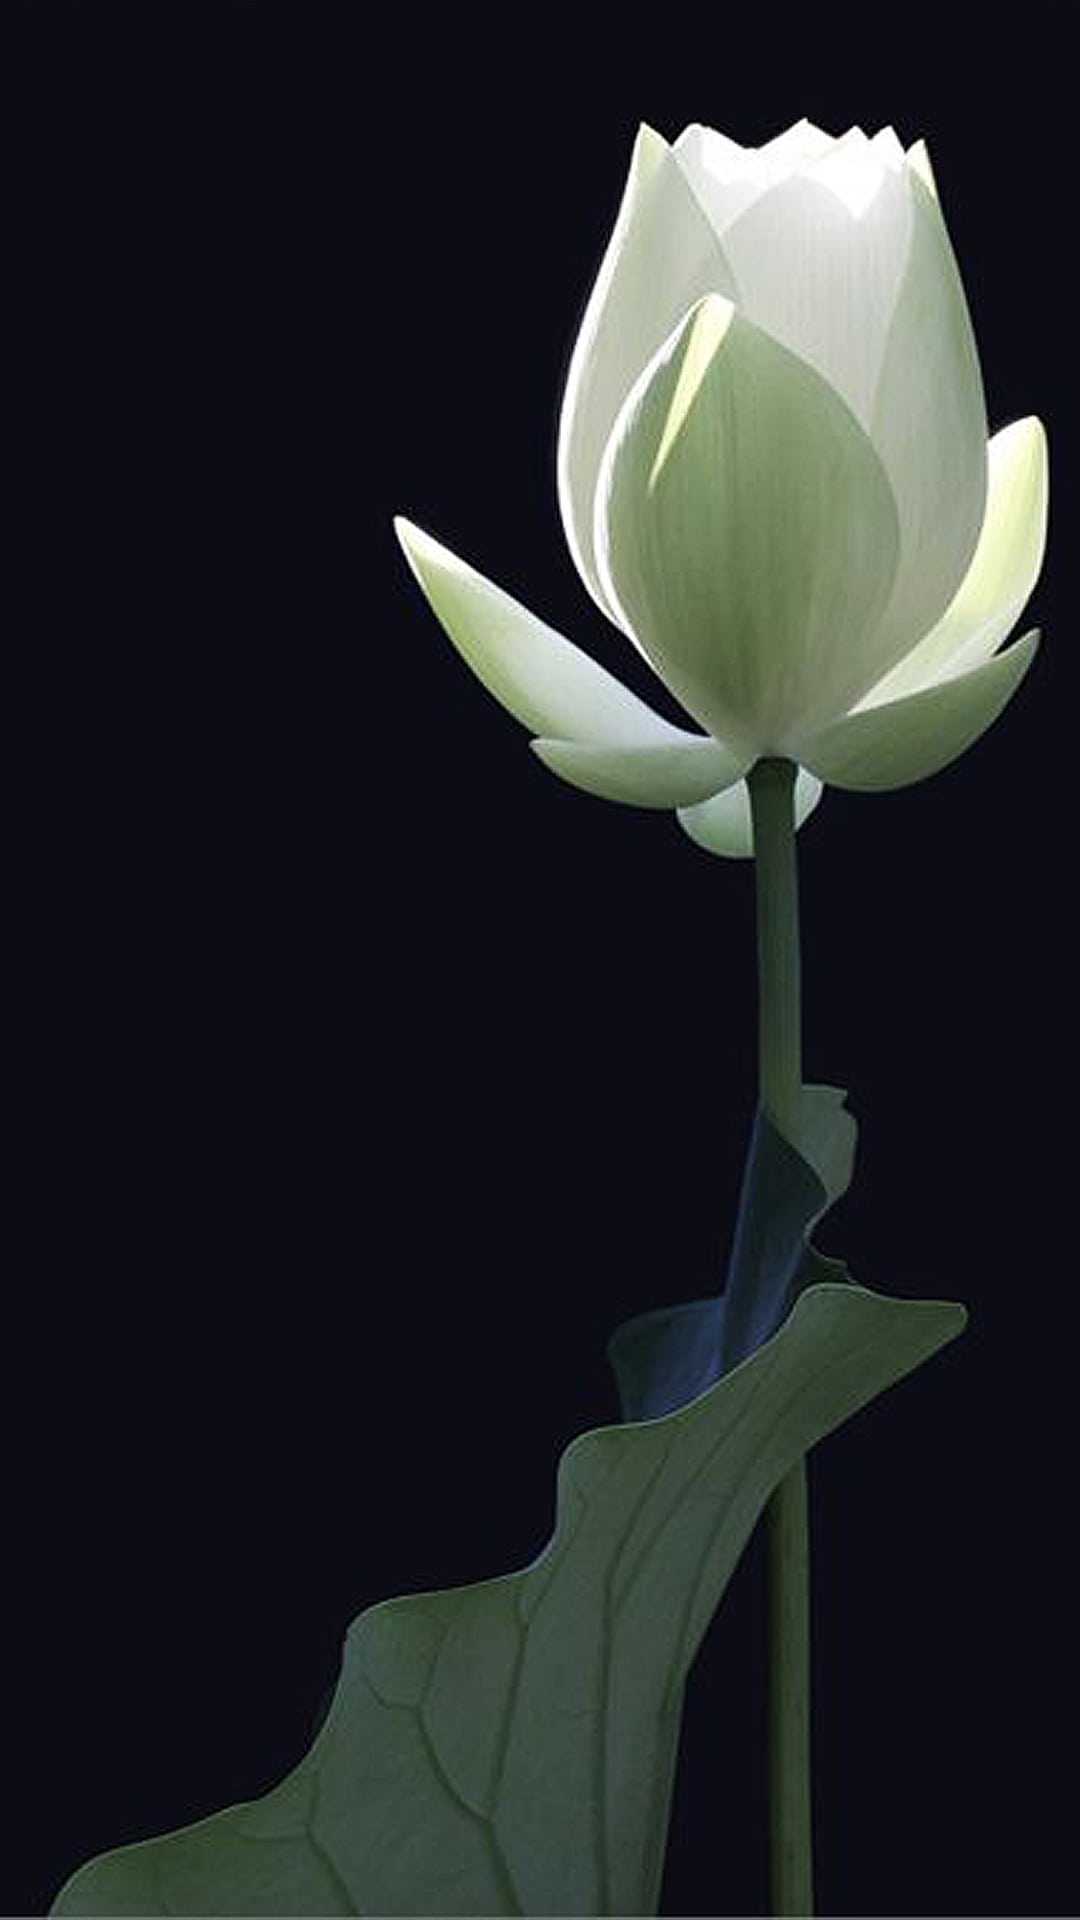 Carcasa iPhone - White Lotus